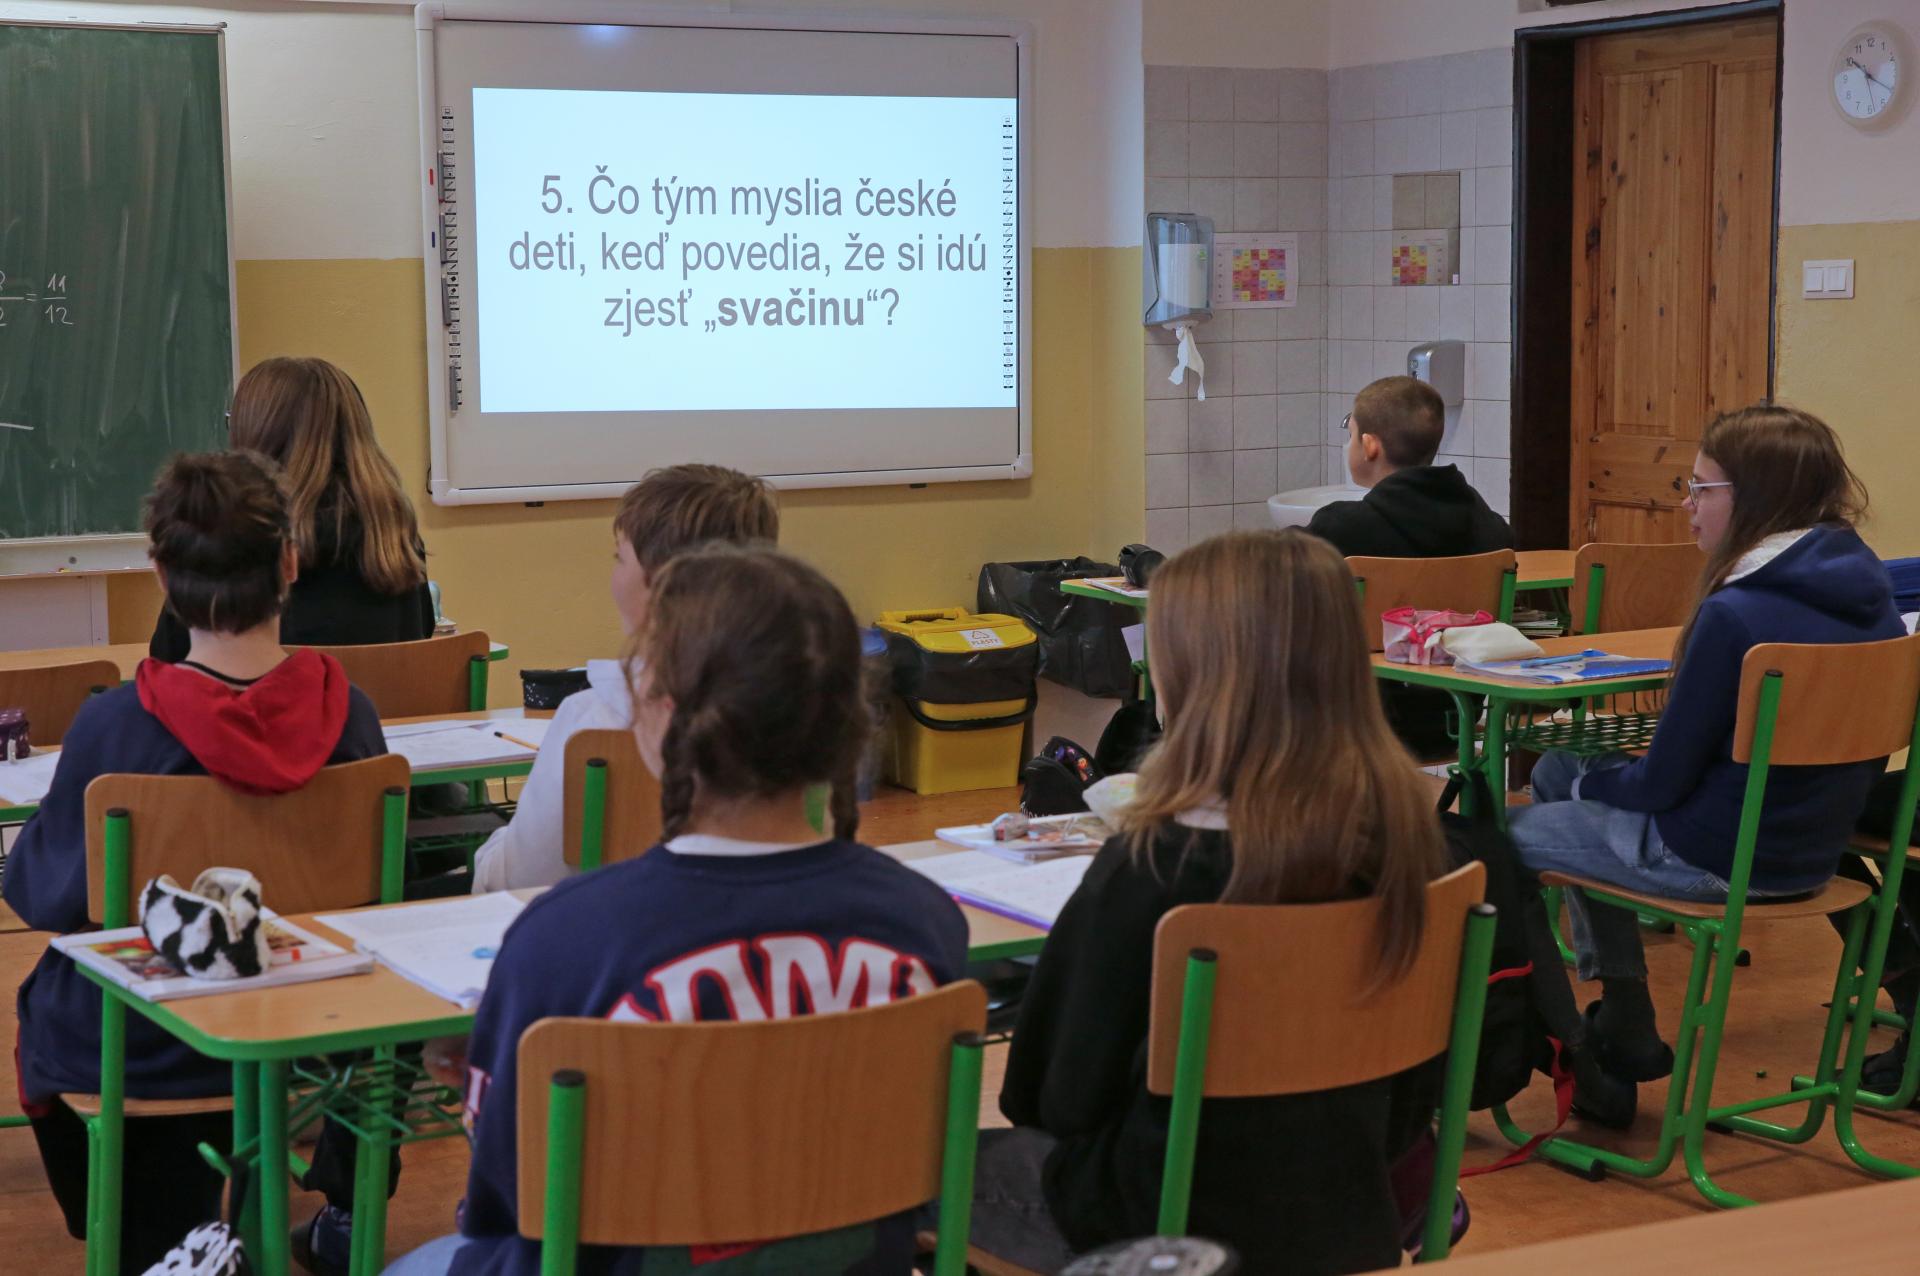 Na viac než 26 školách v Bratislave má byť výbušnina, dostali výhražný e-mail. Polícia oznámenia preveruje